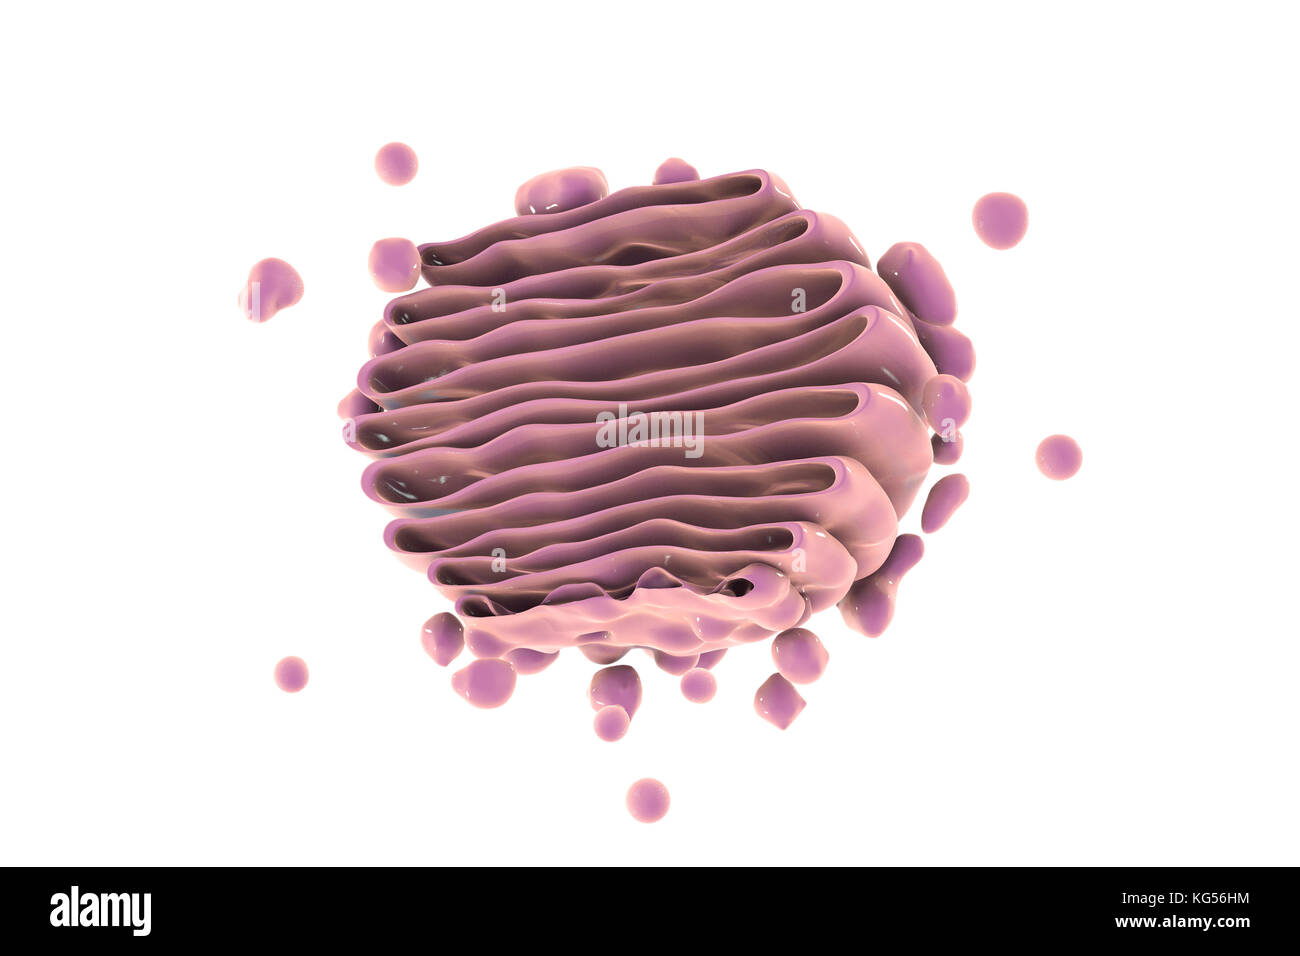 Computer Abbildung: Golgi-apparat. Dieses Organell fungiert als zentrale Delivery System für die Zelle. Seine primäre Funktion ist es, zu modifizieren, zu speichern und zu transportieren Proteine und Lipide an anderer Stelle in der Zelle. Stockfoto